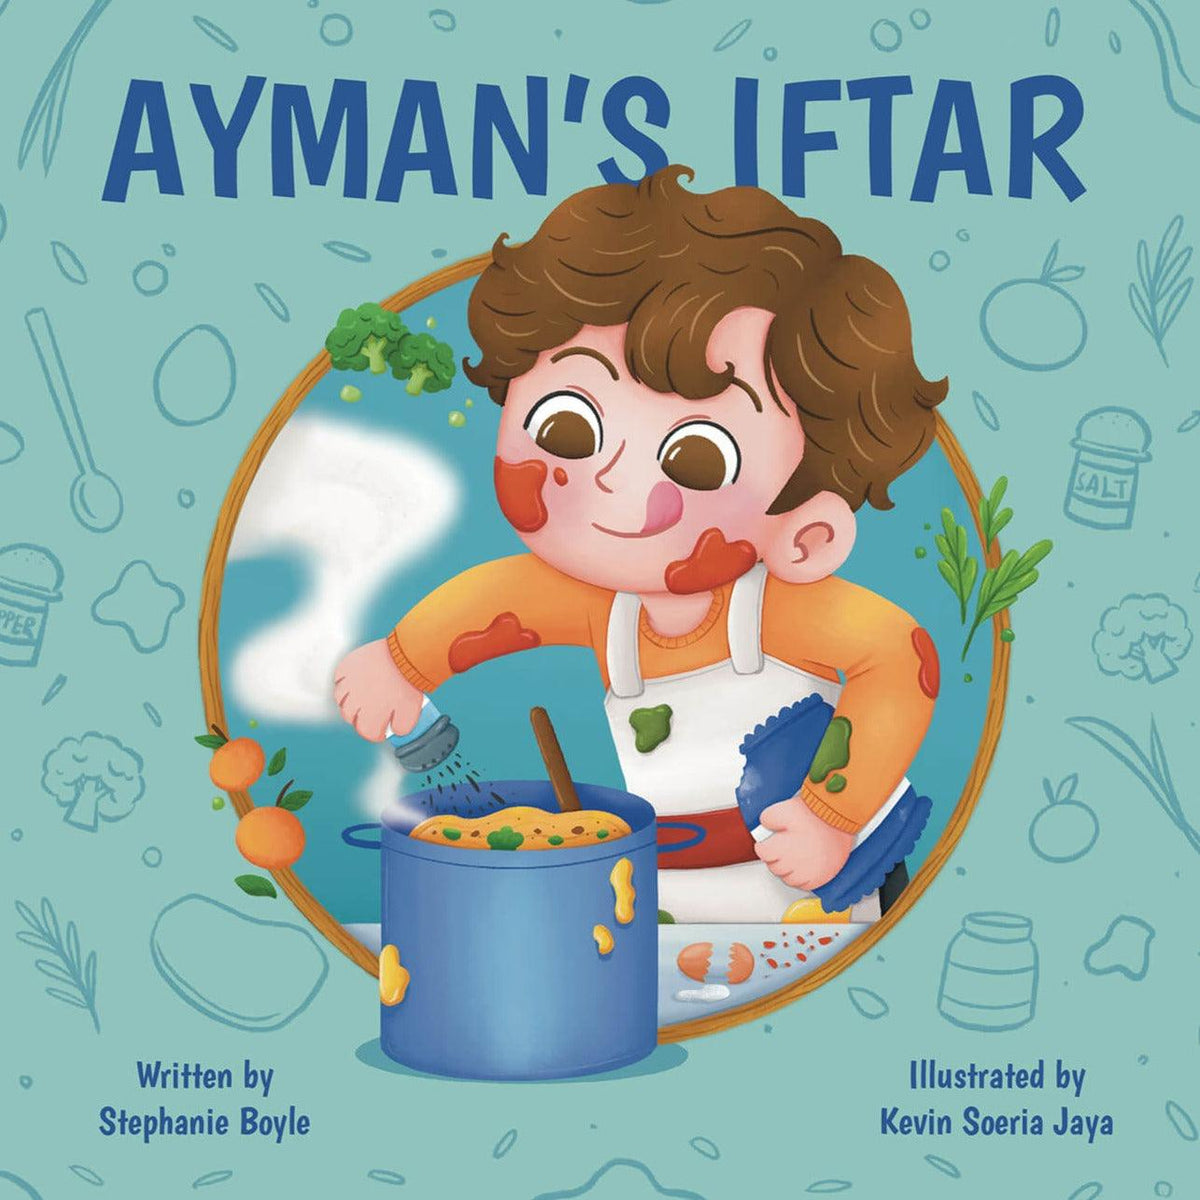 Ayman's Iftar